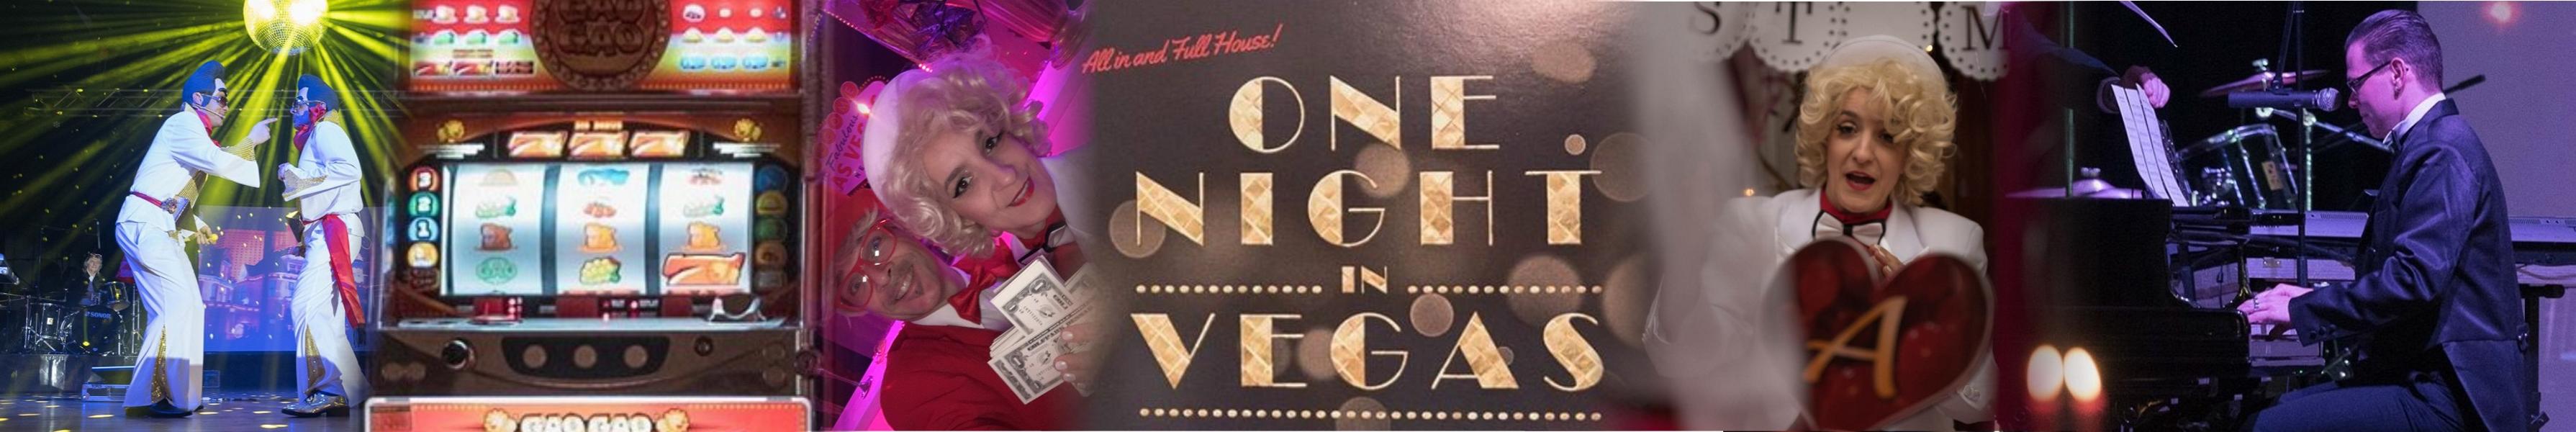 Teaser Weihnachtsfeier buchen Mottoparty One Night in Vegas